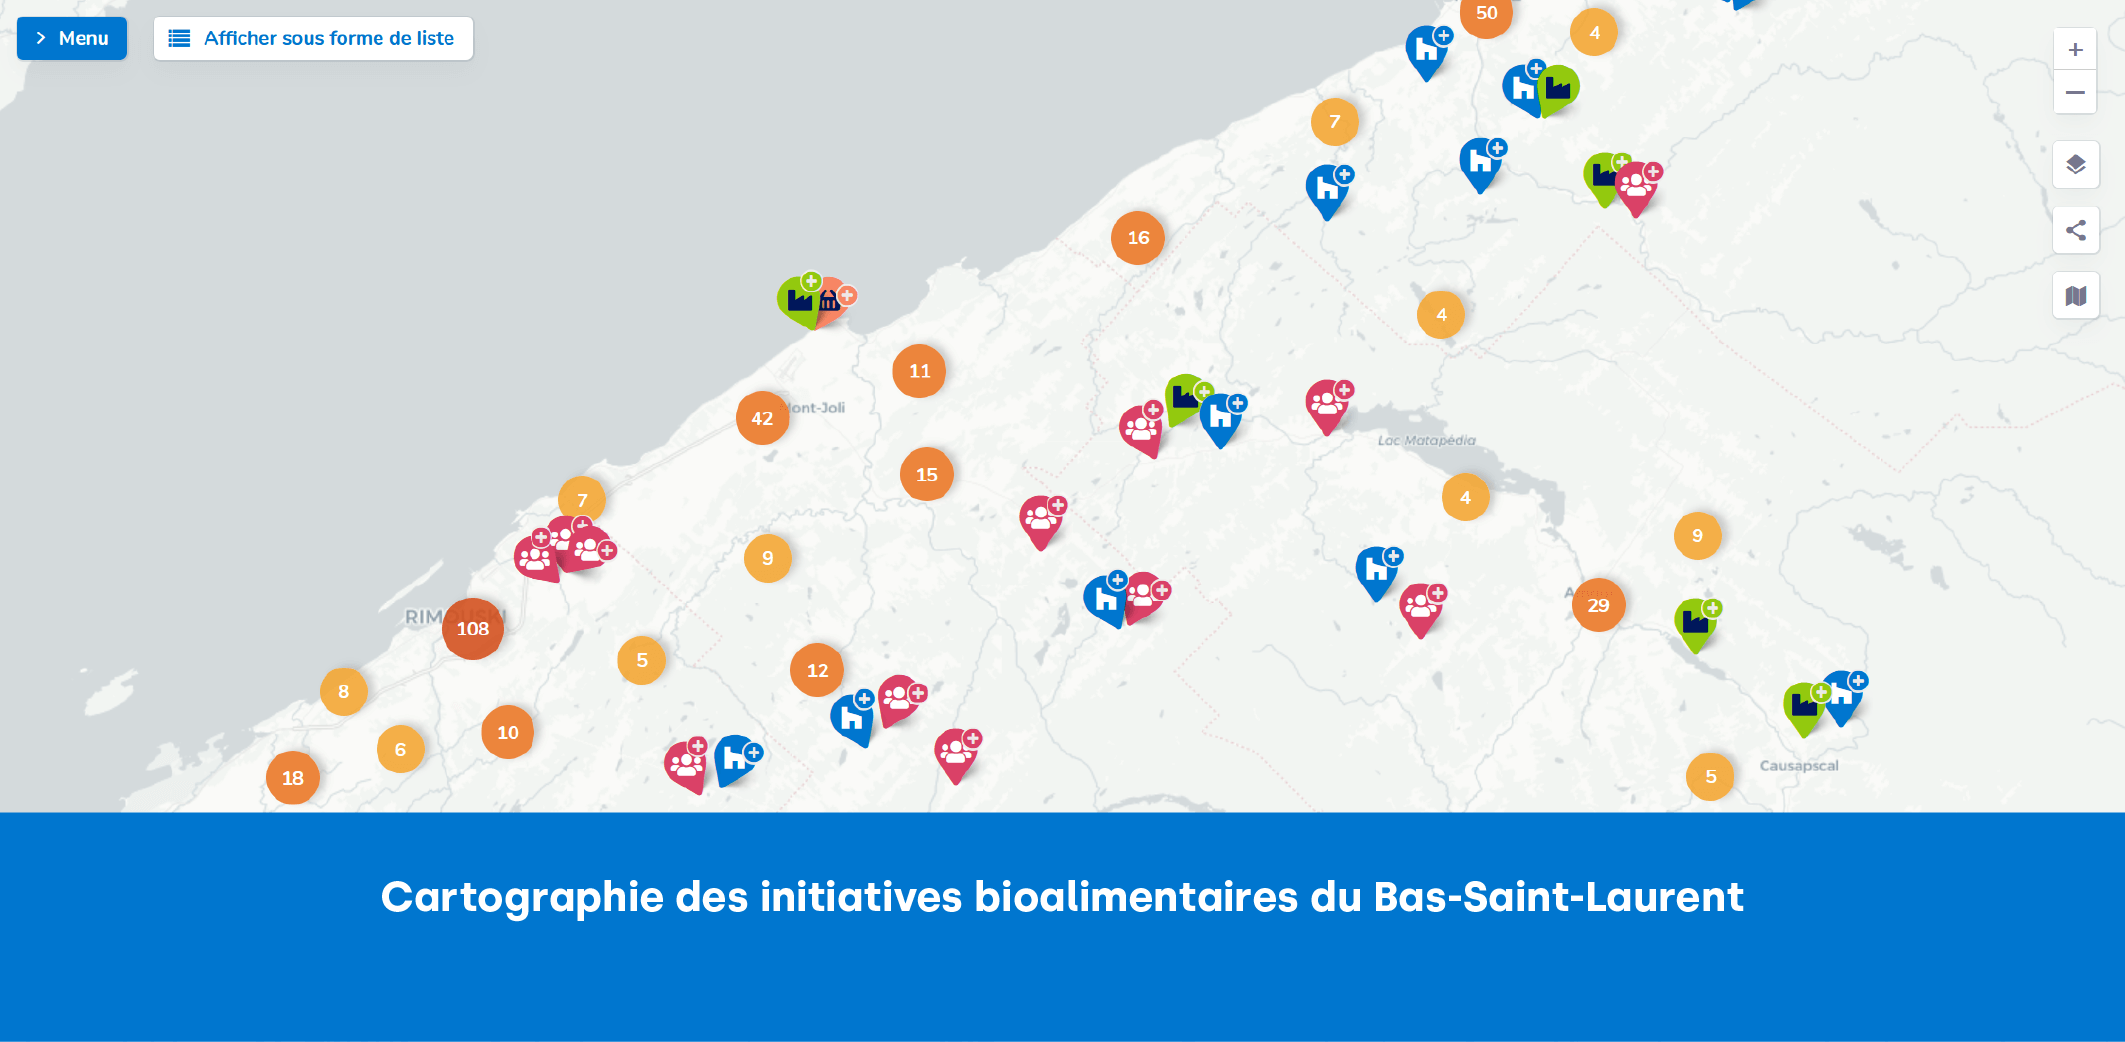 Cartographie des initiatives bioalimentaires du Bas-Saint-Laurent